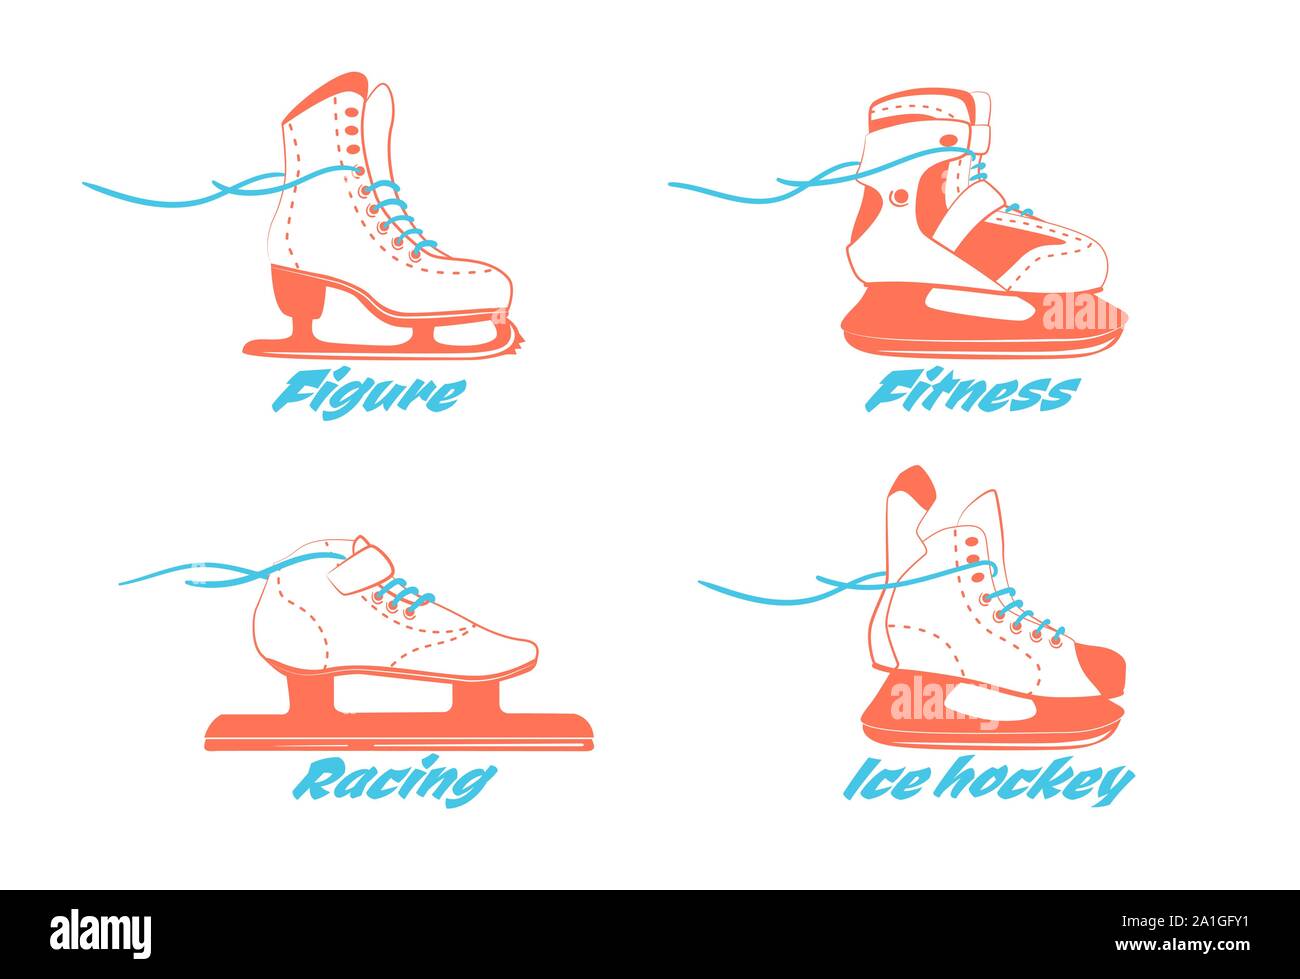 Ensemble de patins à glace - figure, fitness, course, hockey. Type de bottes de patins. L'équipement de sport d'hiver logo en couleurs vintage. Vector illustration isolé sur fond blanc. Illustration de Vecteur